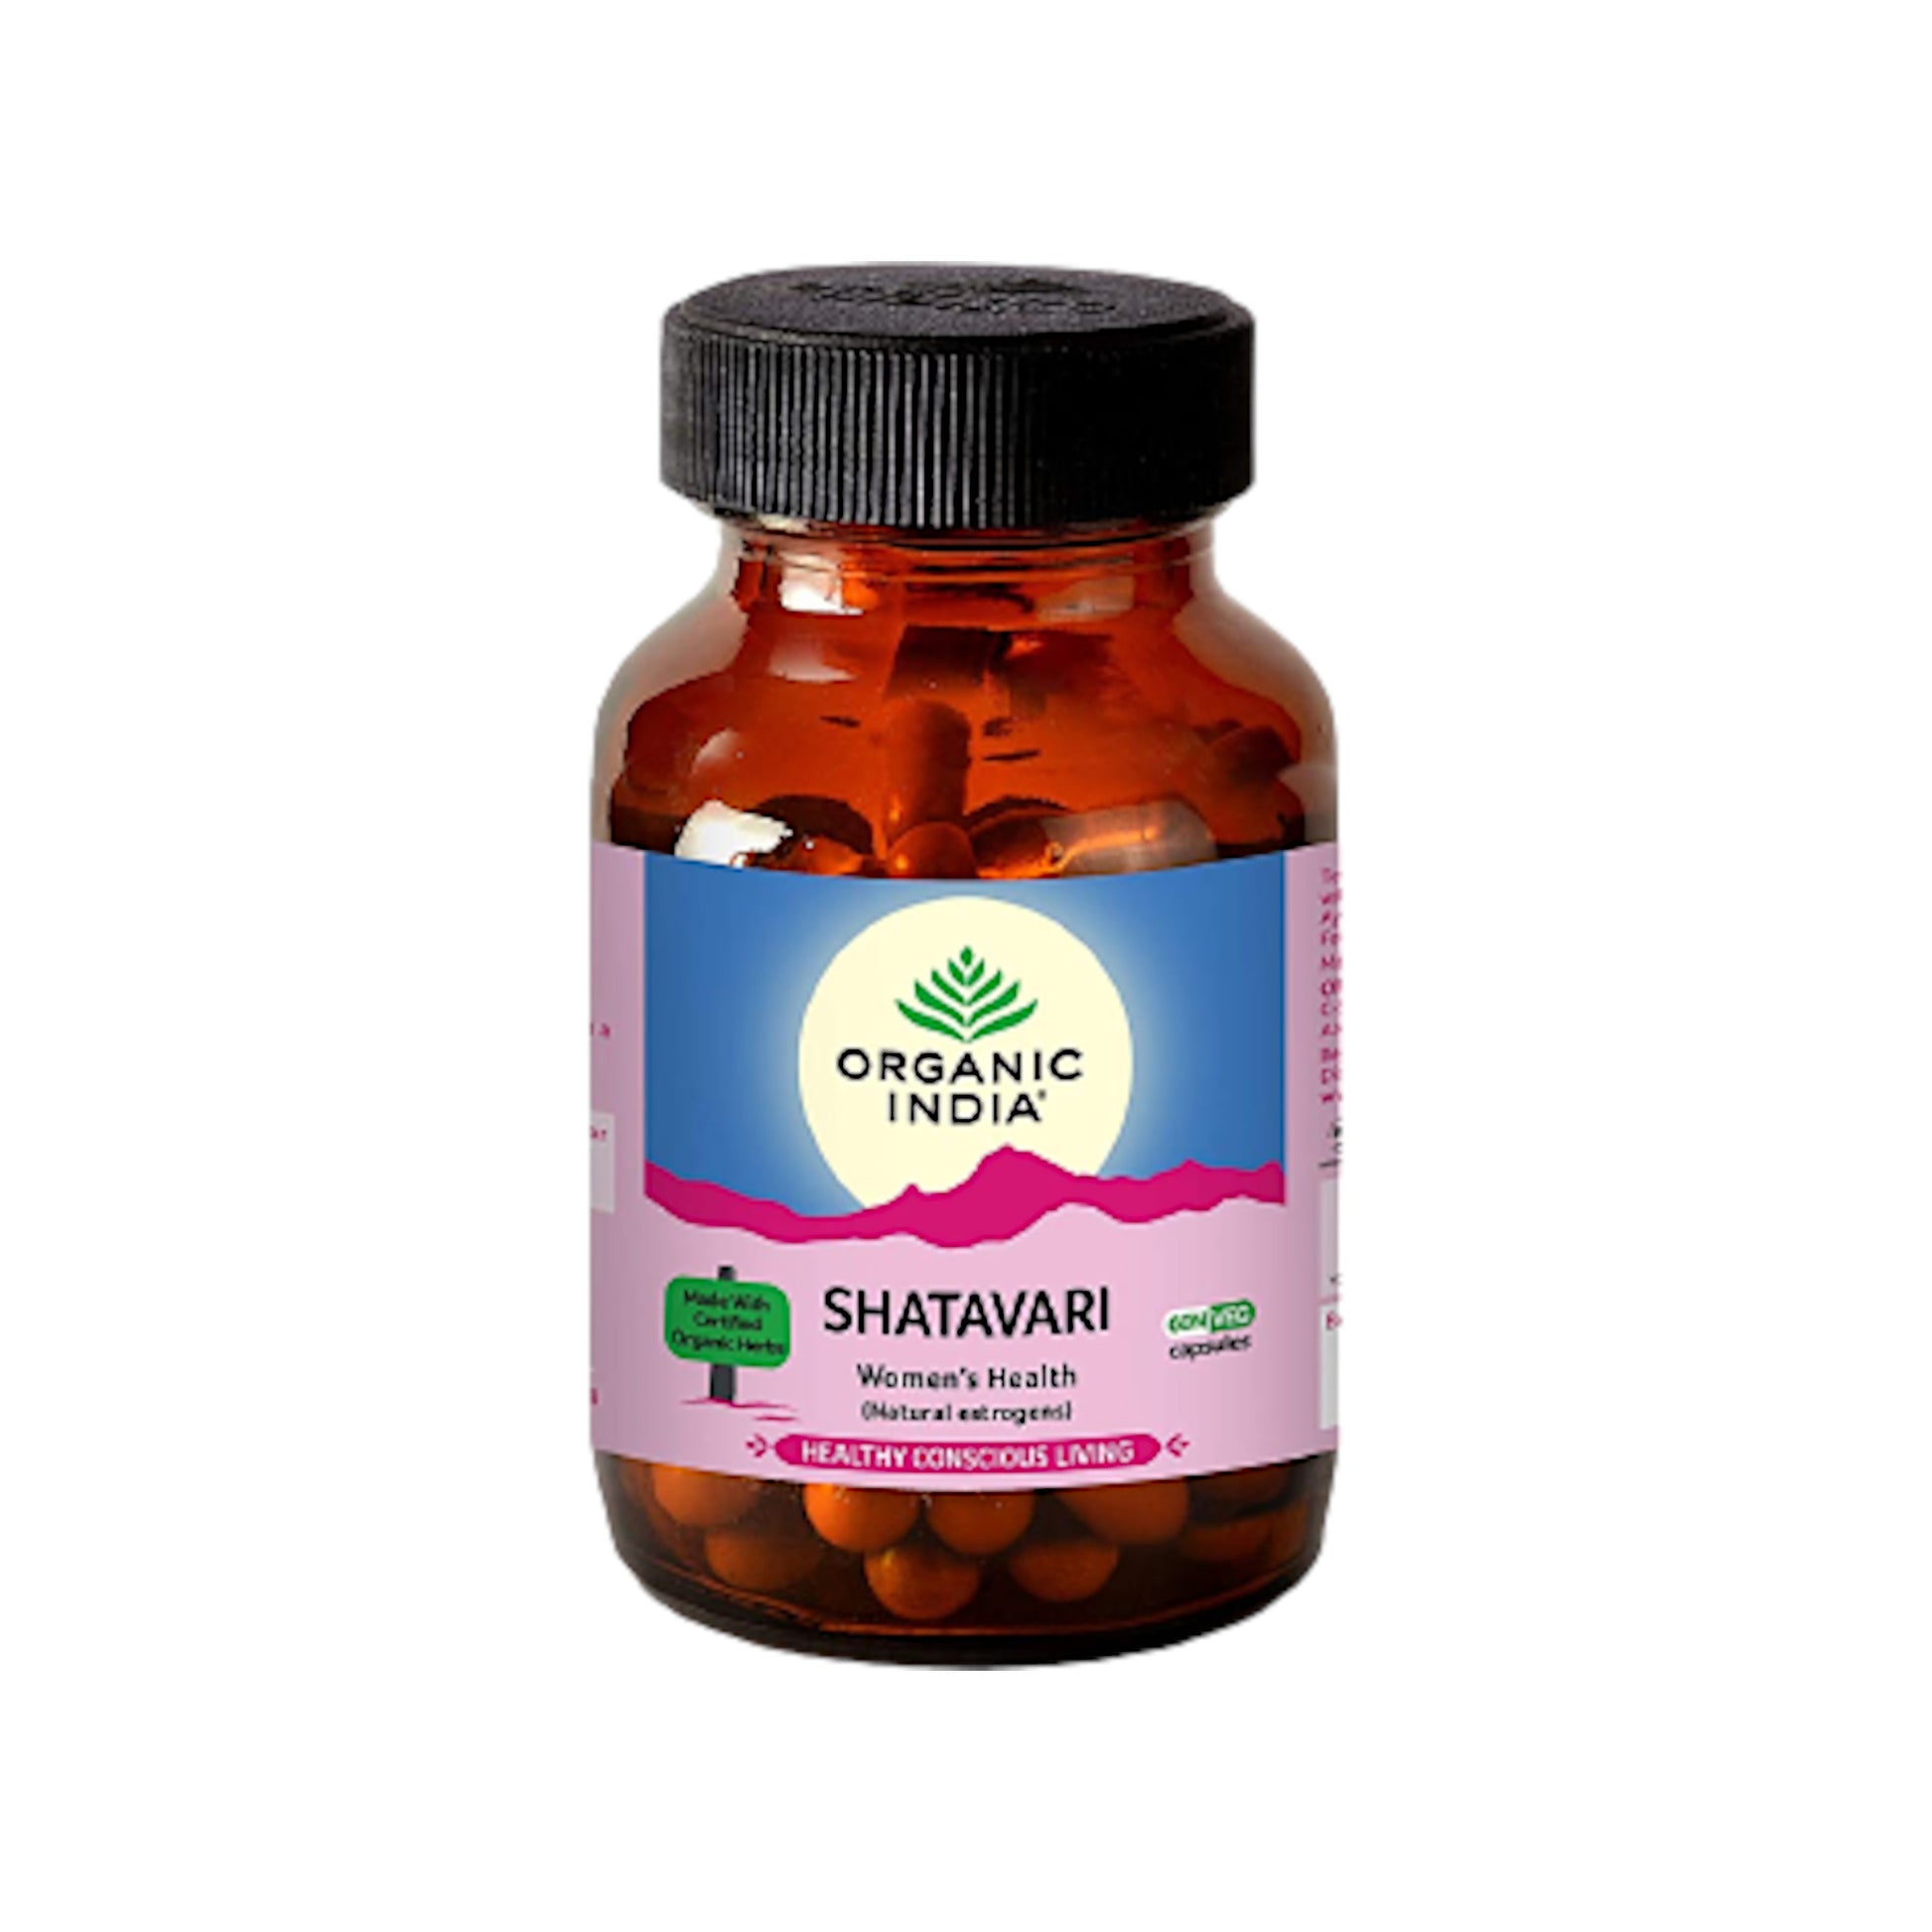 Image: Organic India Shatavari 60 Capsules: Support for female health, hormones, and menopause.